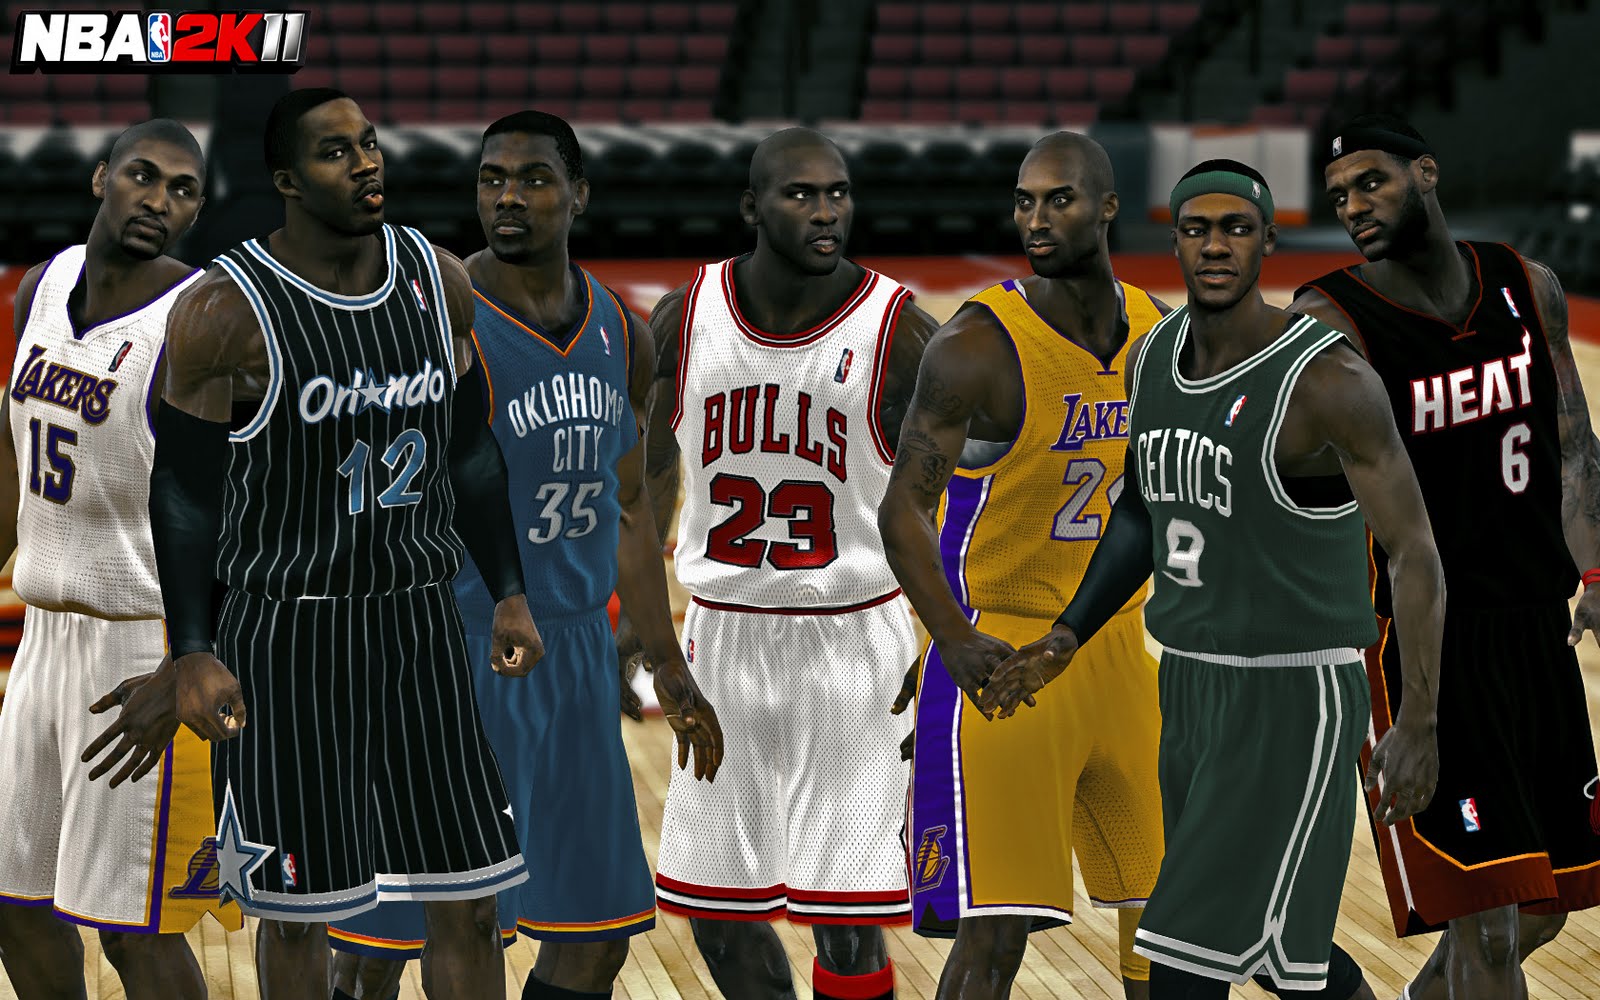 Jordan cards | Basketball Wallpapers For Android: Michael Jordan ...